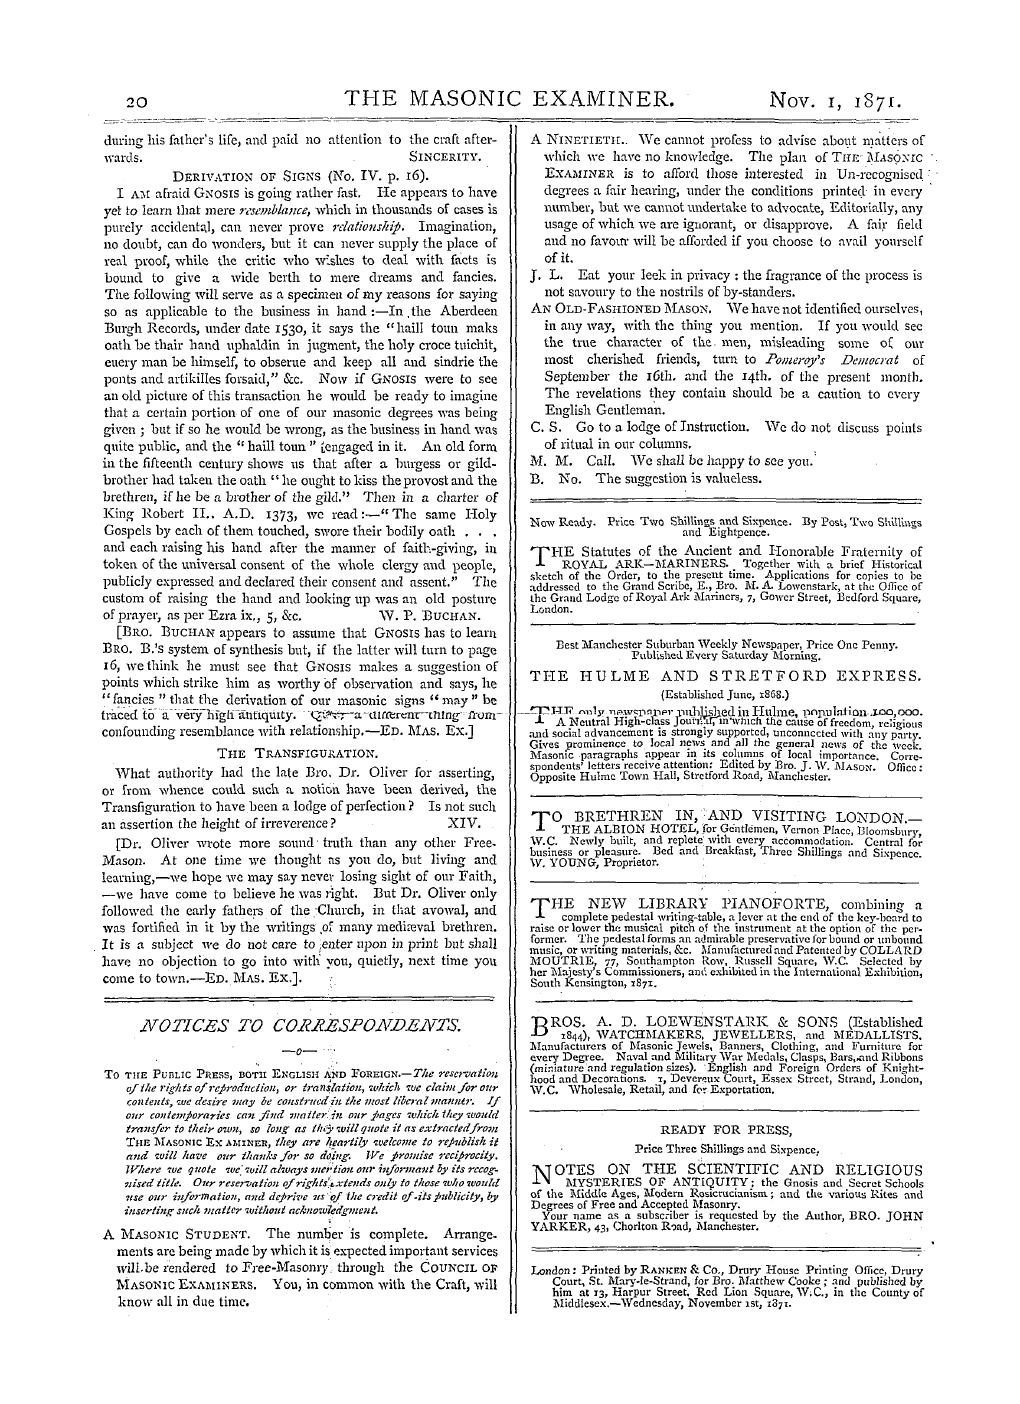 The Masonic Examiner: 1871-11-01 - Notices To Correspondents.